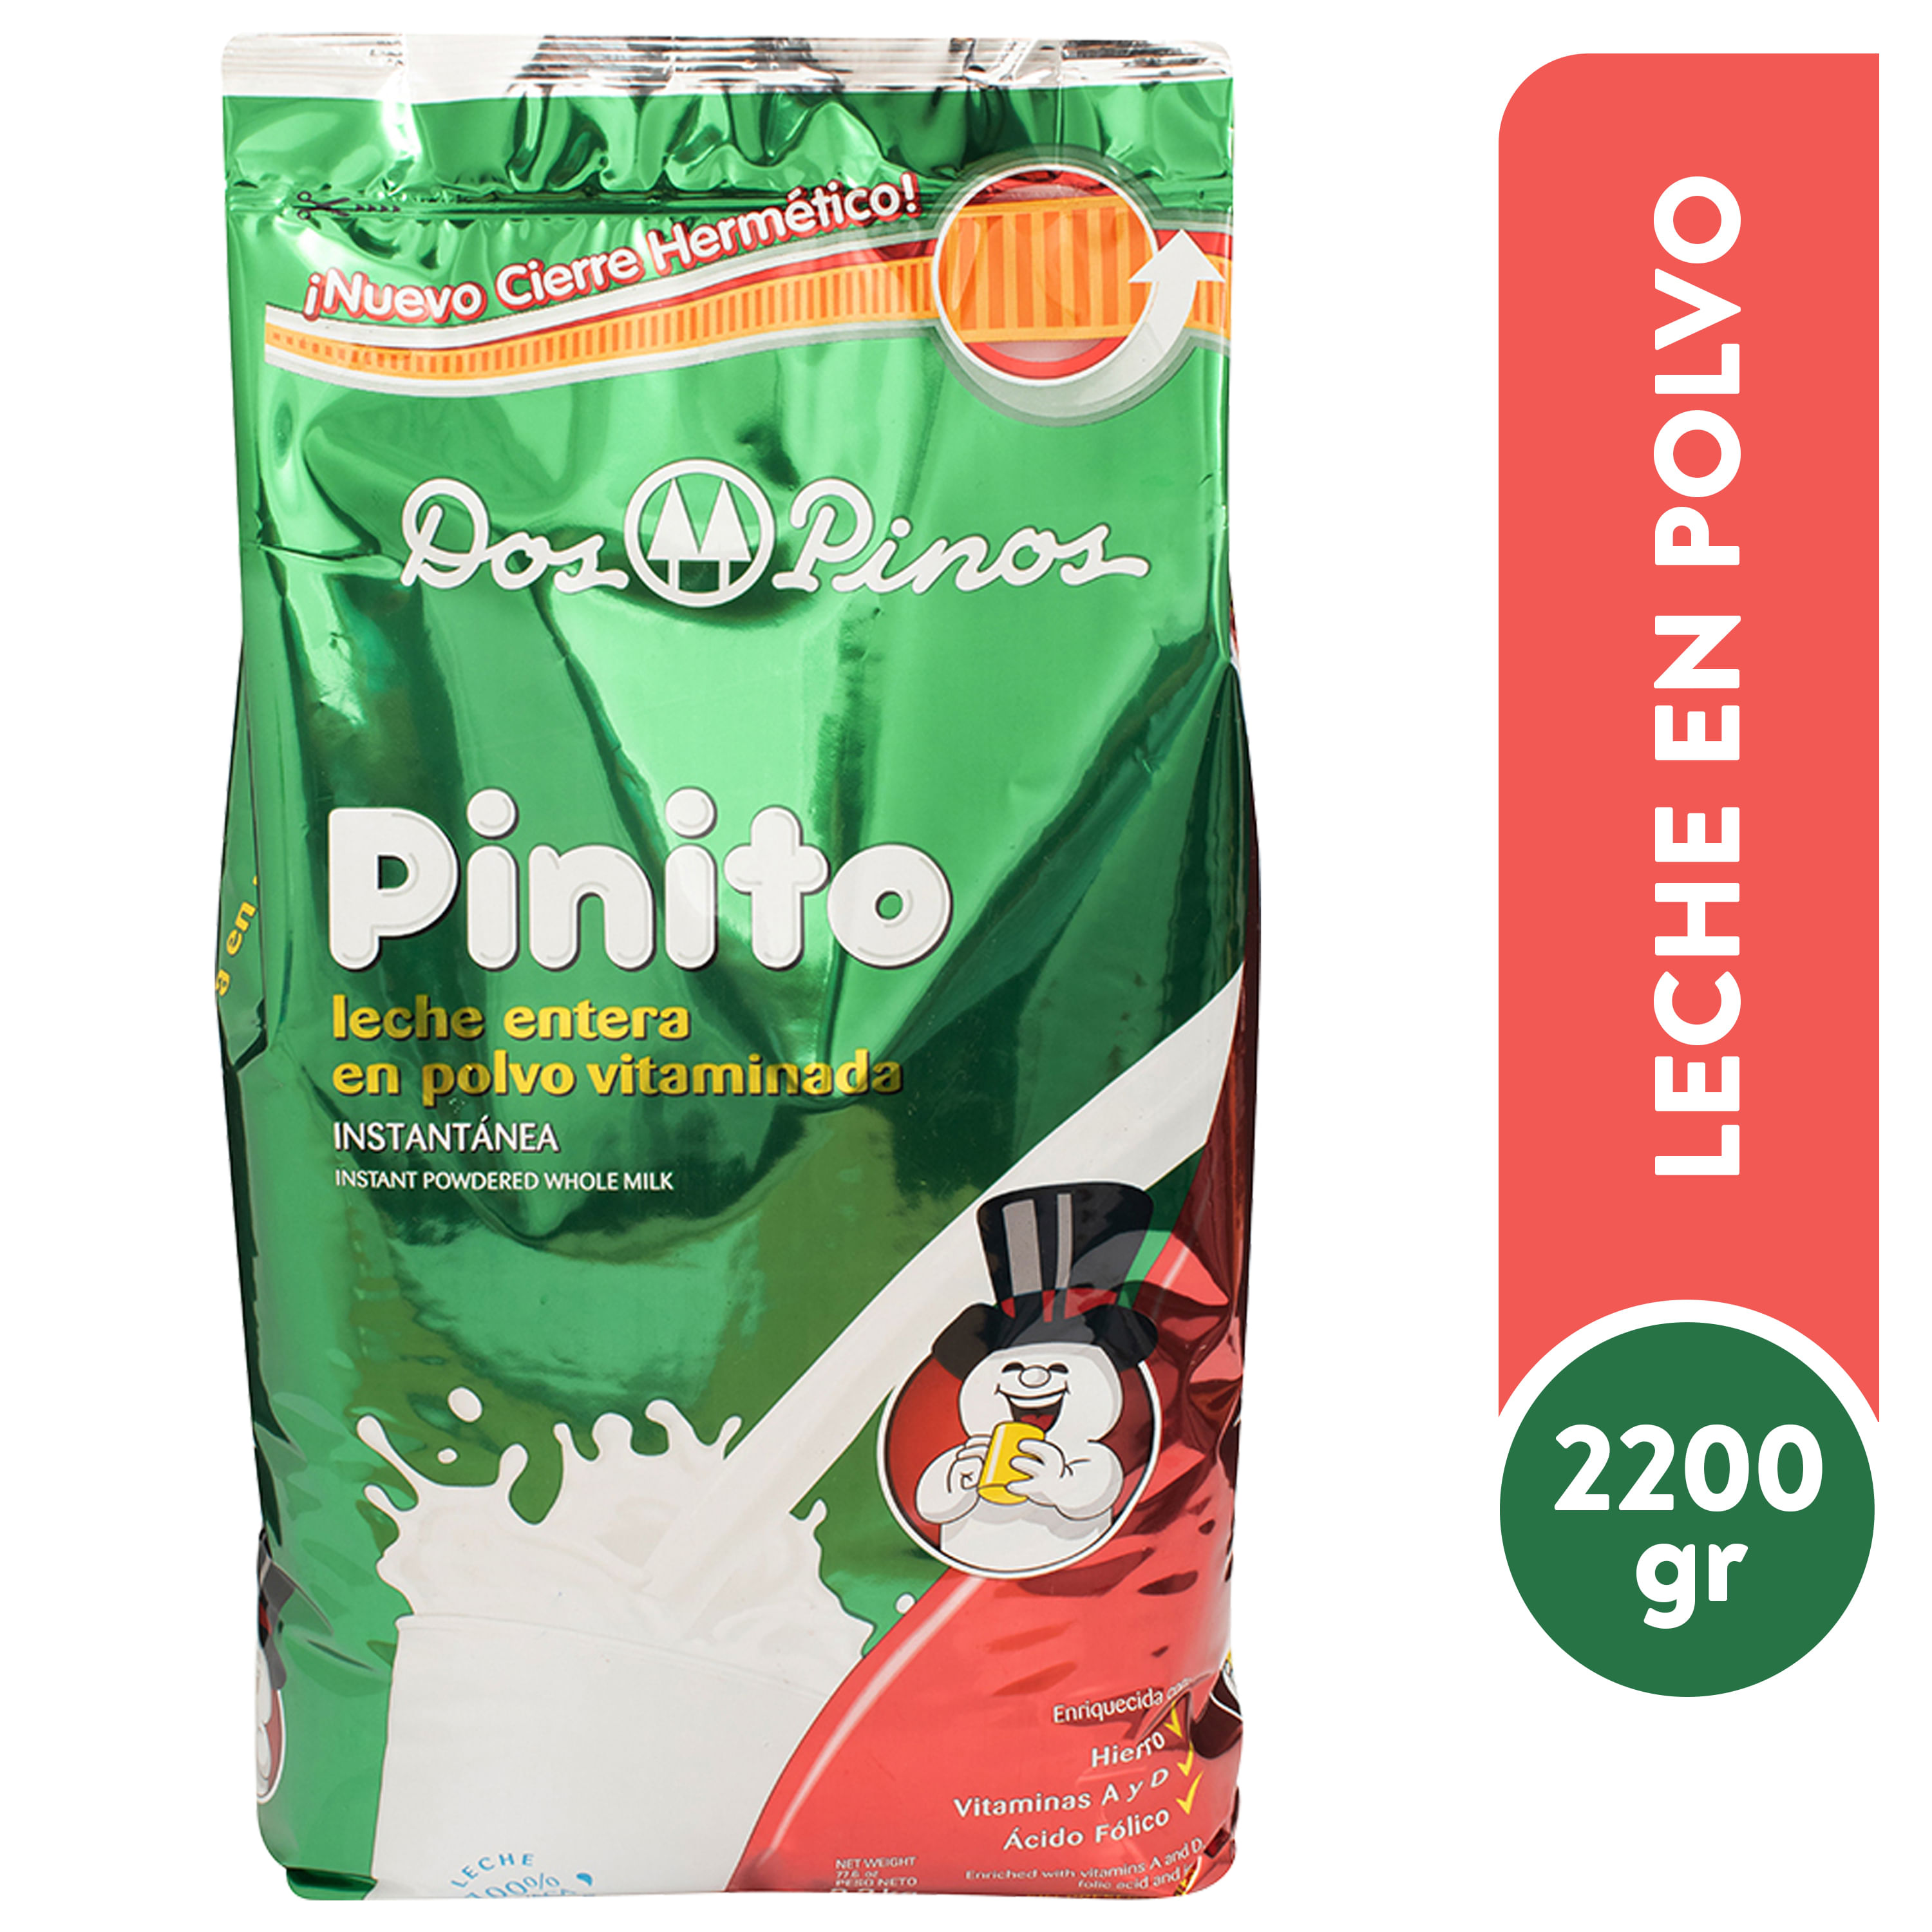 Leche-Dos-Pinos-Pinito-Polvo-Bolsa-2200gr-1-14978